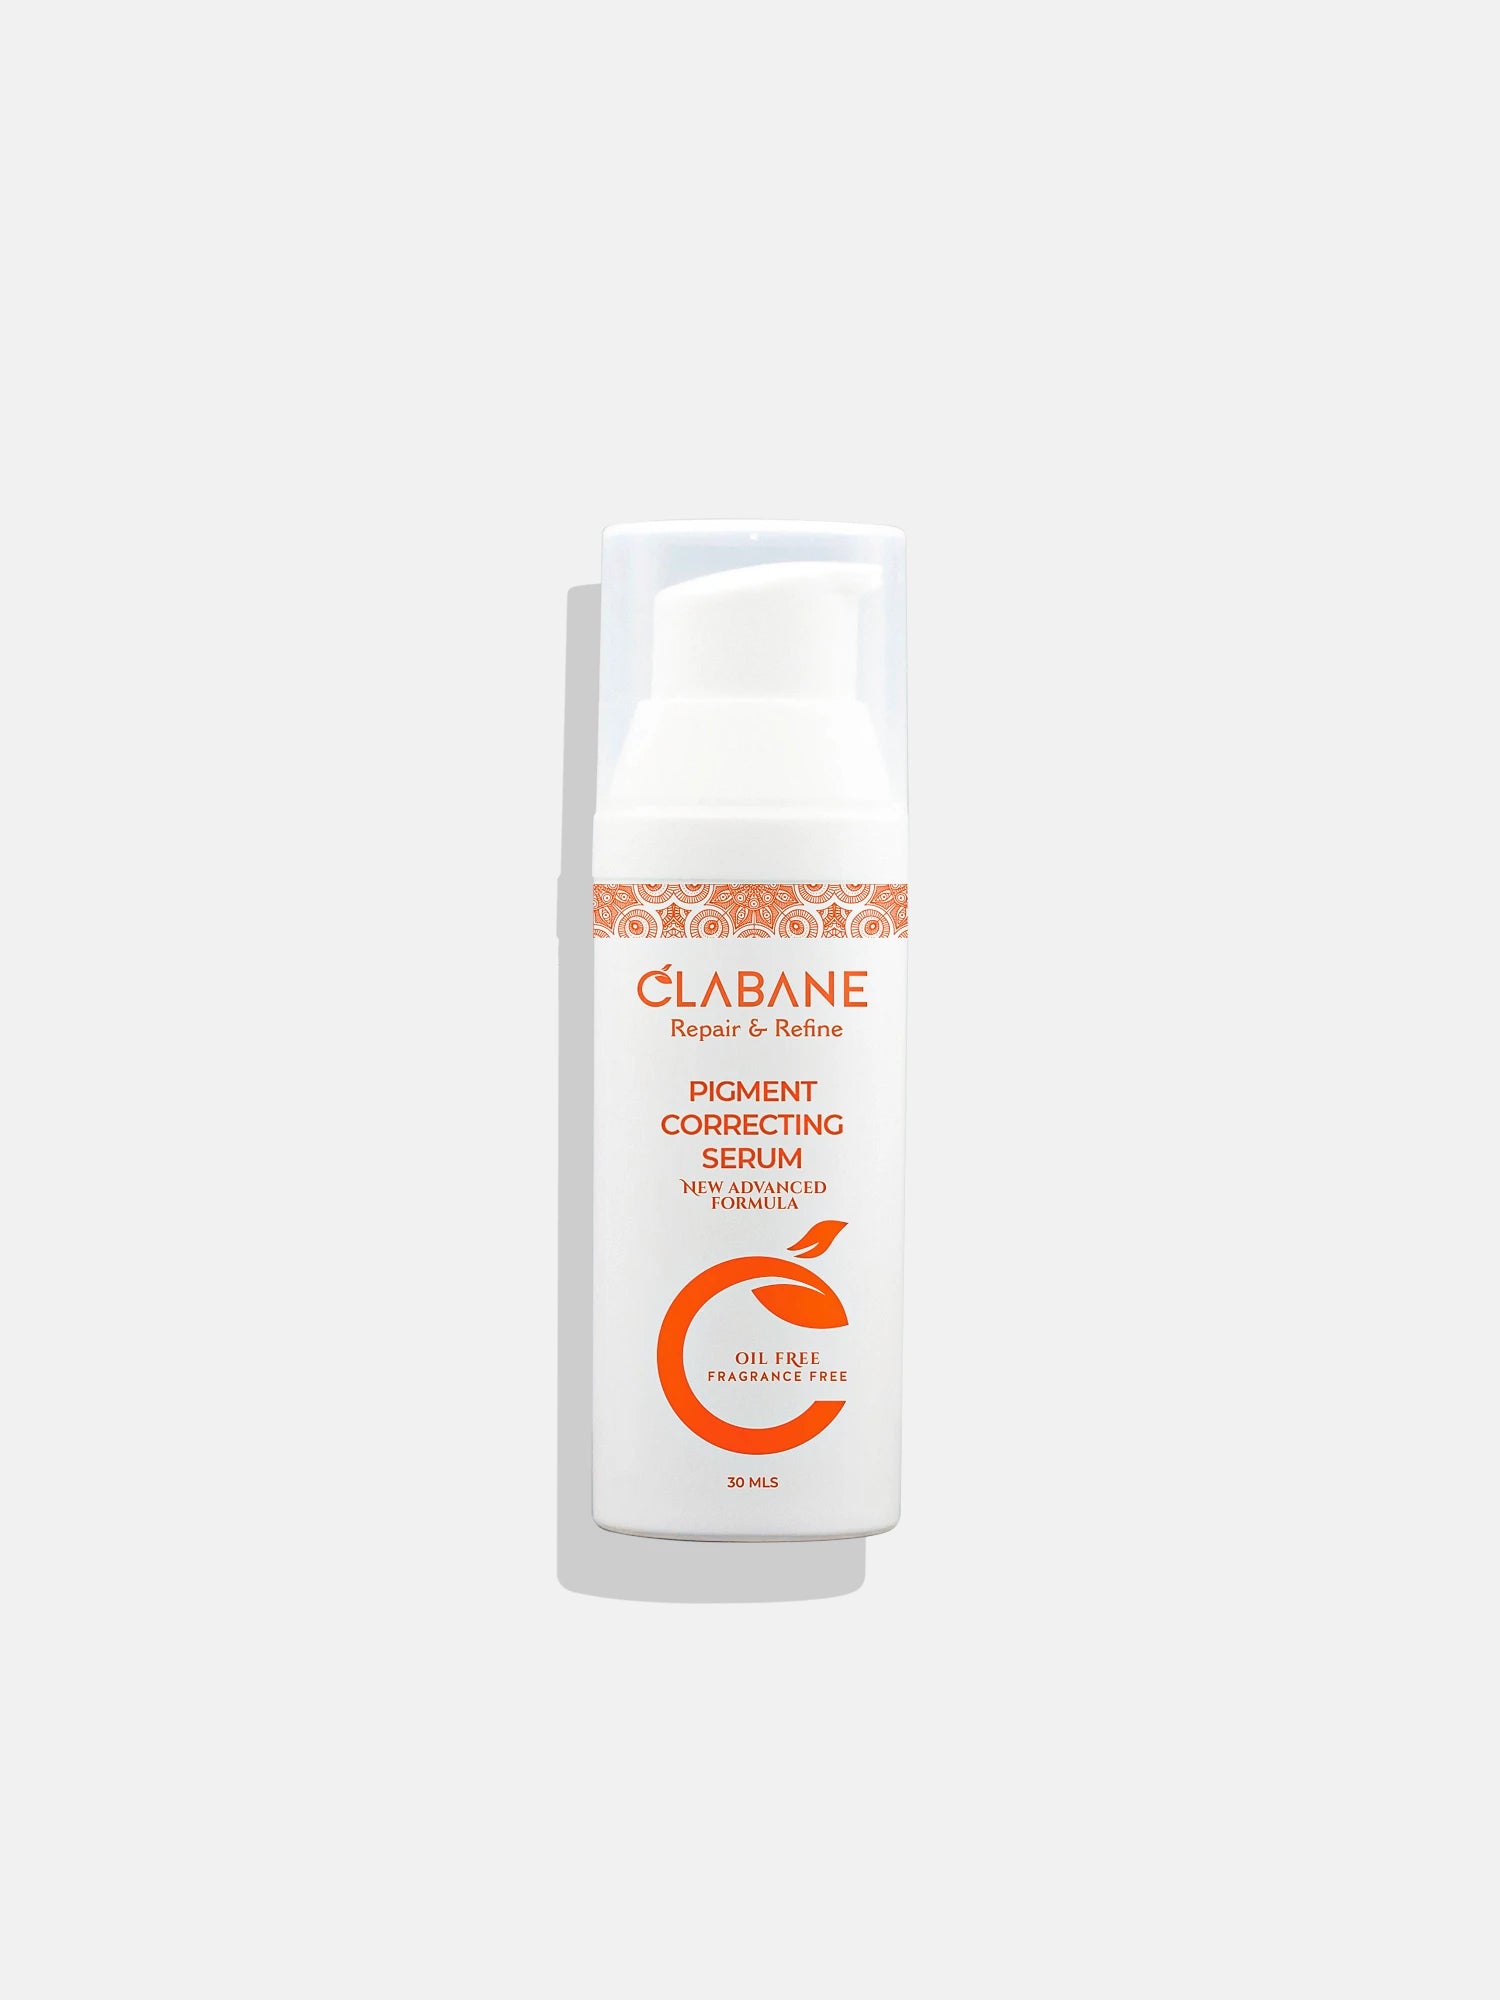 Clabane Repair and Refine Pigment Correcting Serum